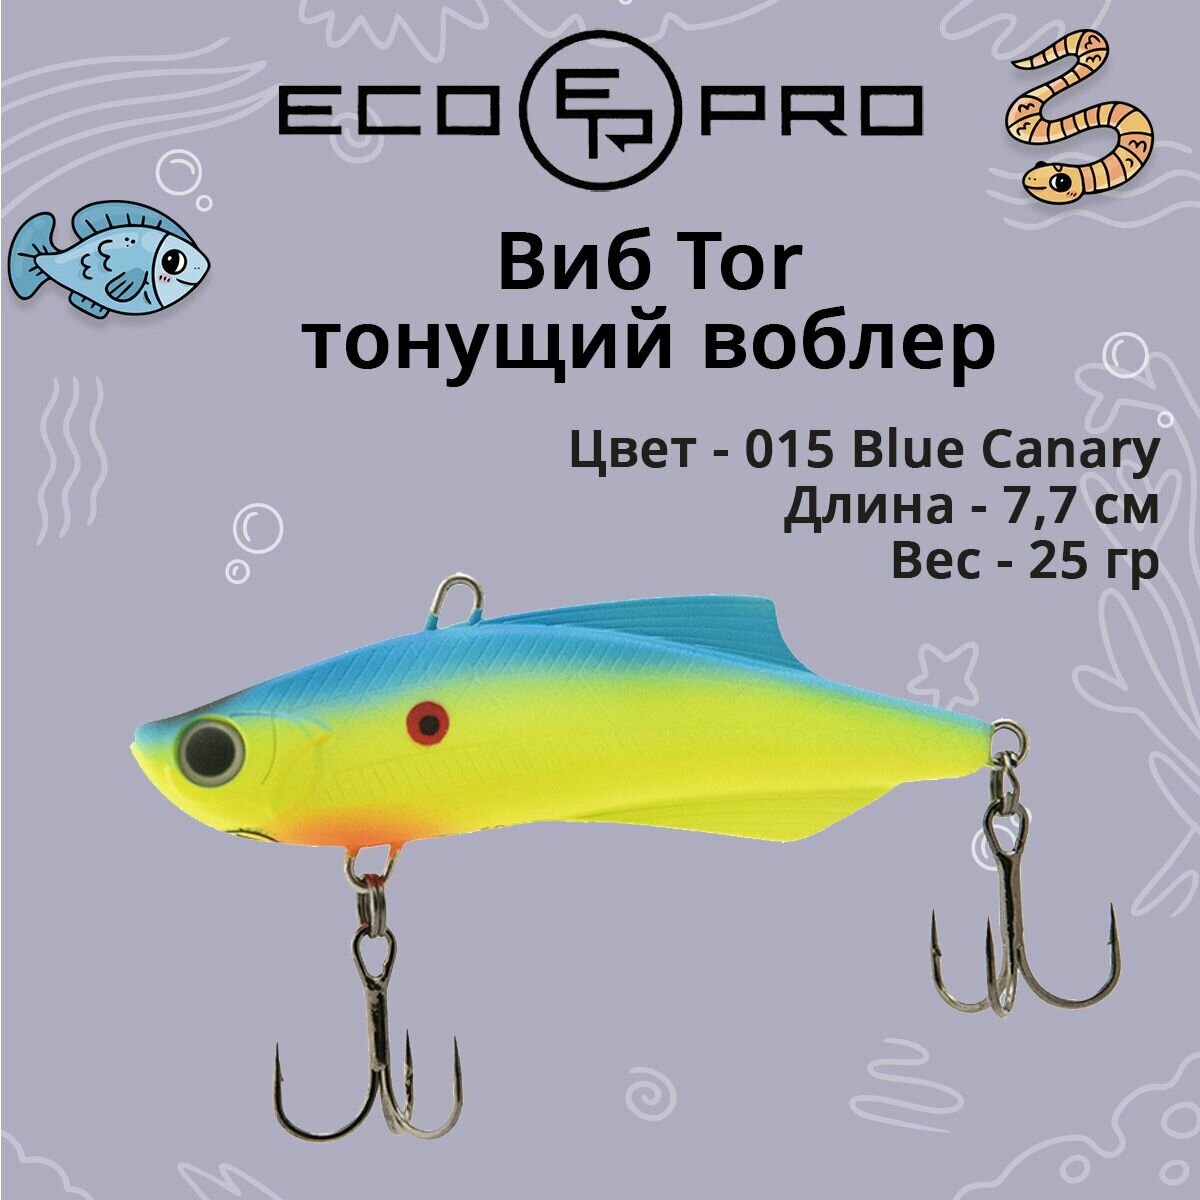 Виб (тонущий воблер) для зимней рыбалки ECOPRO Tor 77мм 25г 015 Blue Canary